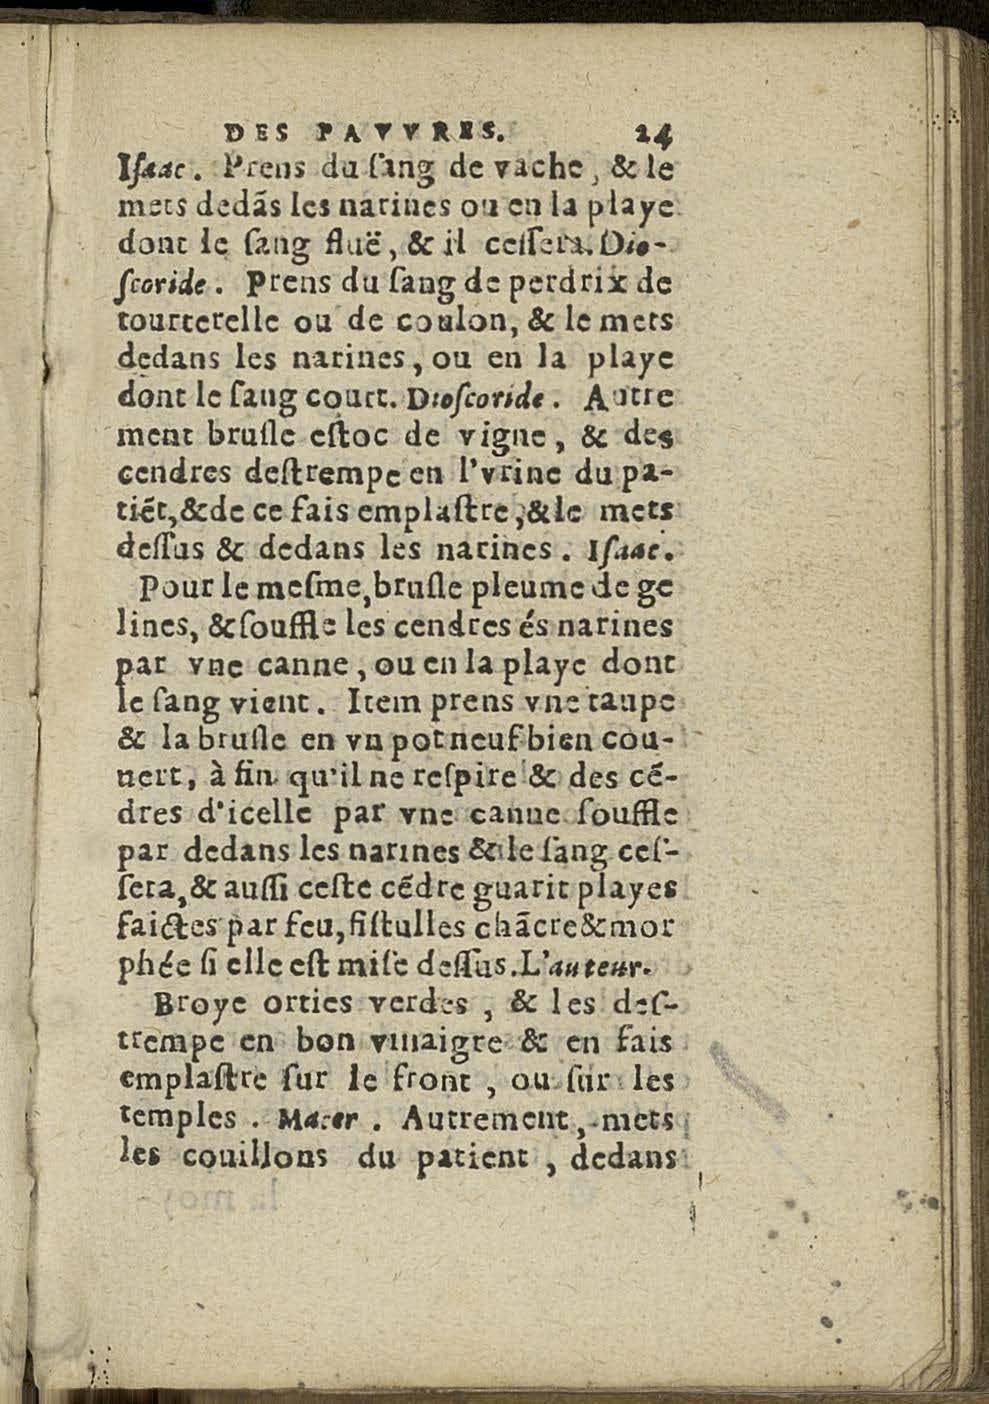 1581 Jean Bailleur Trésor des pauvres_Le Havre_Page_051.jpg